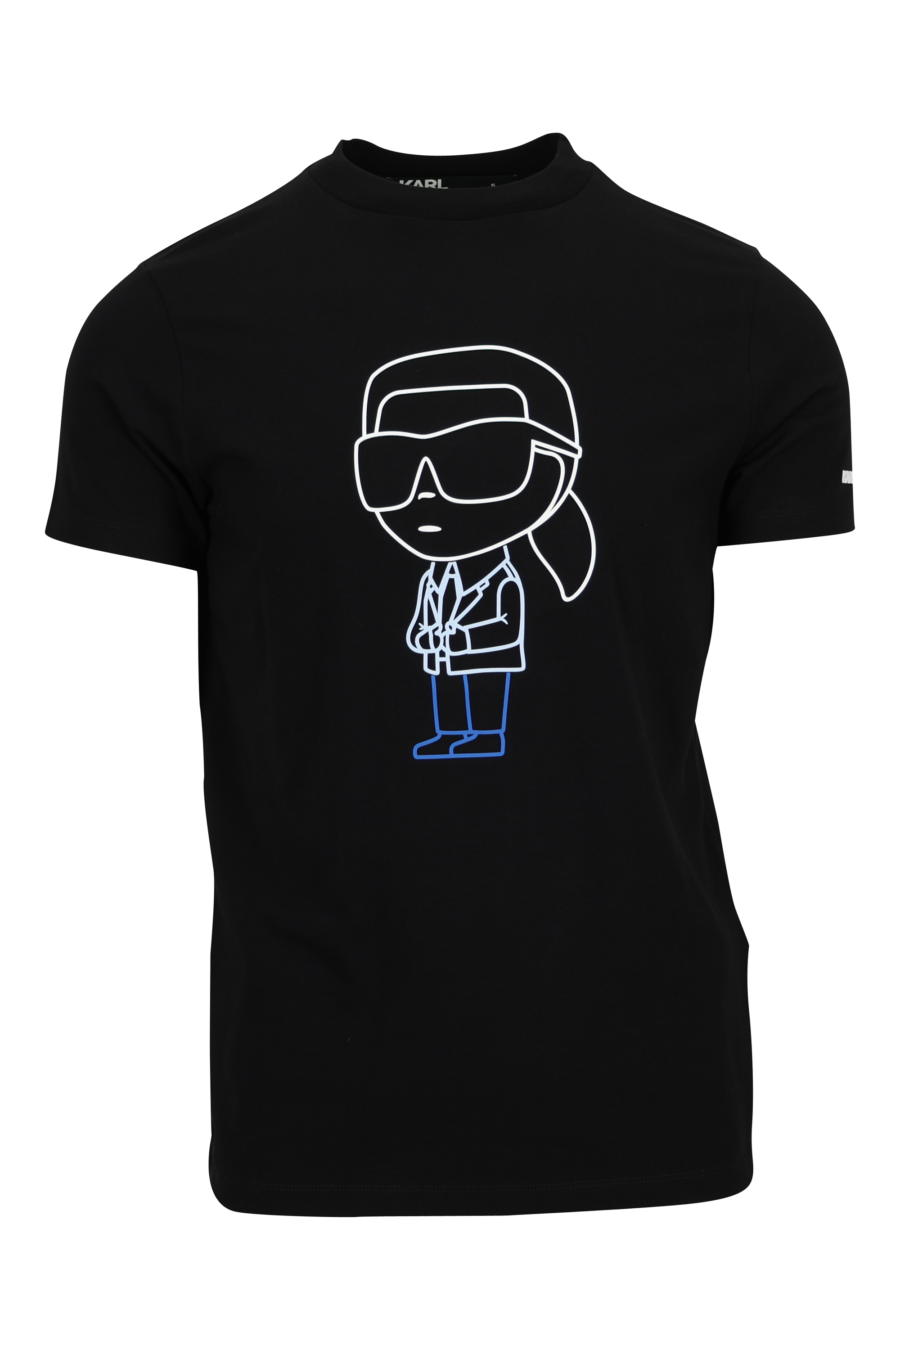 Camiseta negra con maxilogo en goma "karl" en azul - 4062226788915